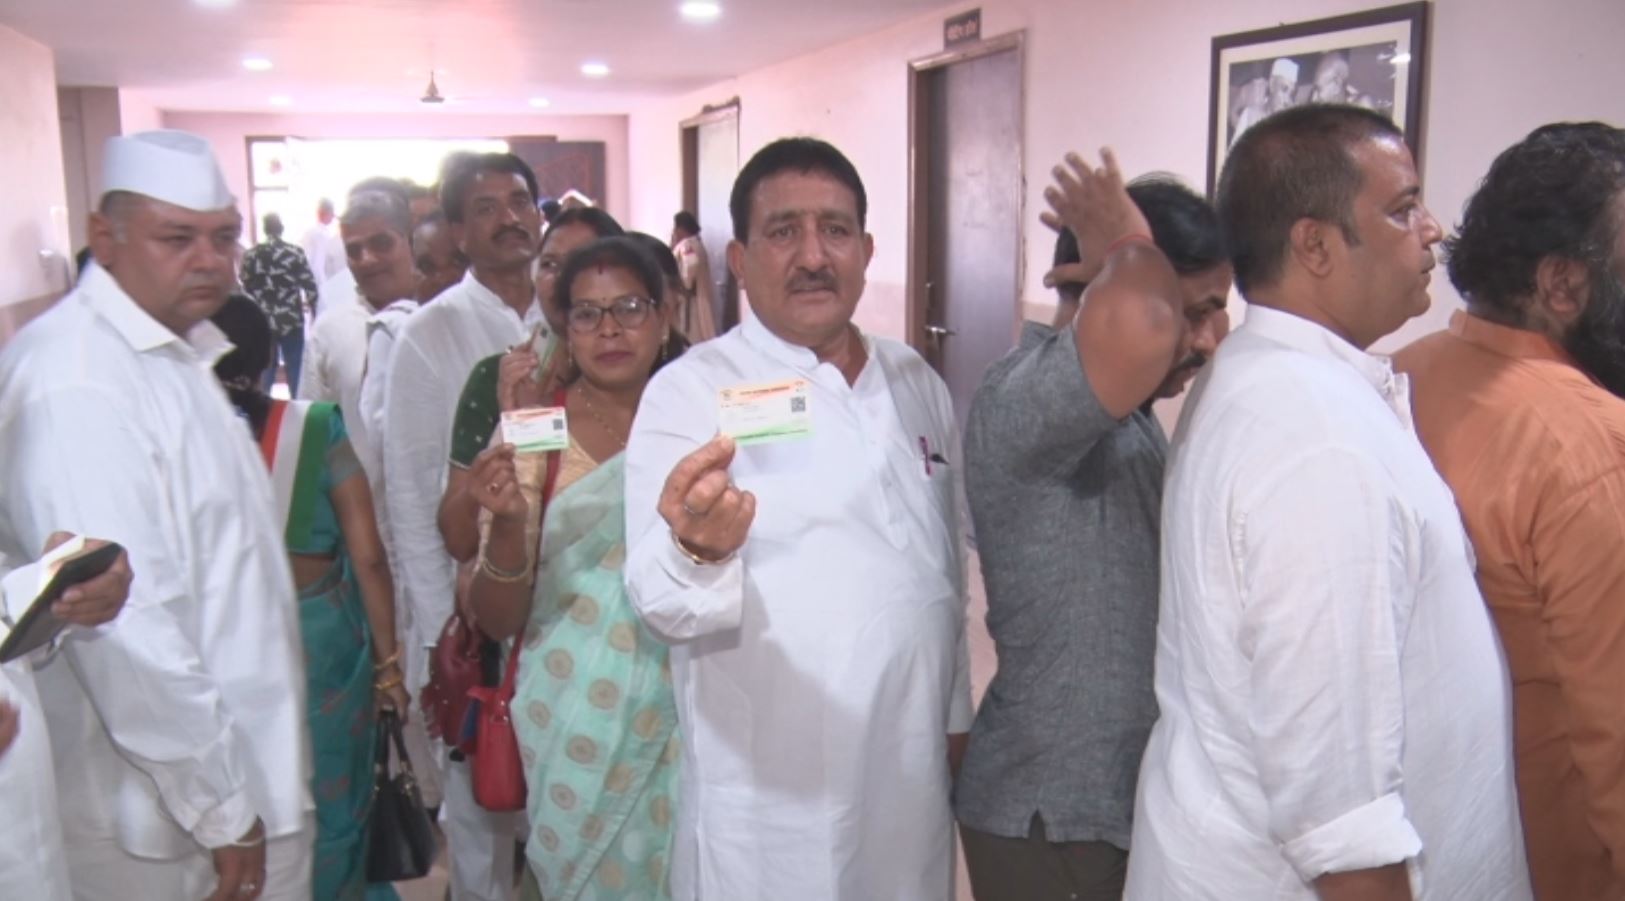 Congressmen showed enthusiasm during voting in Chhattisgarh